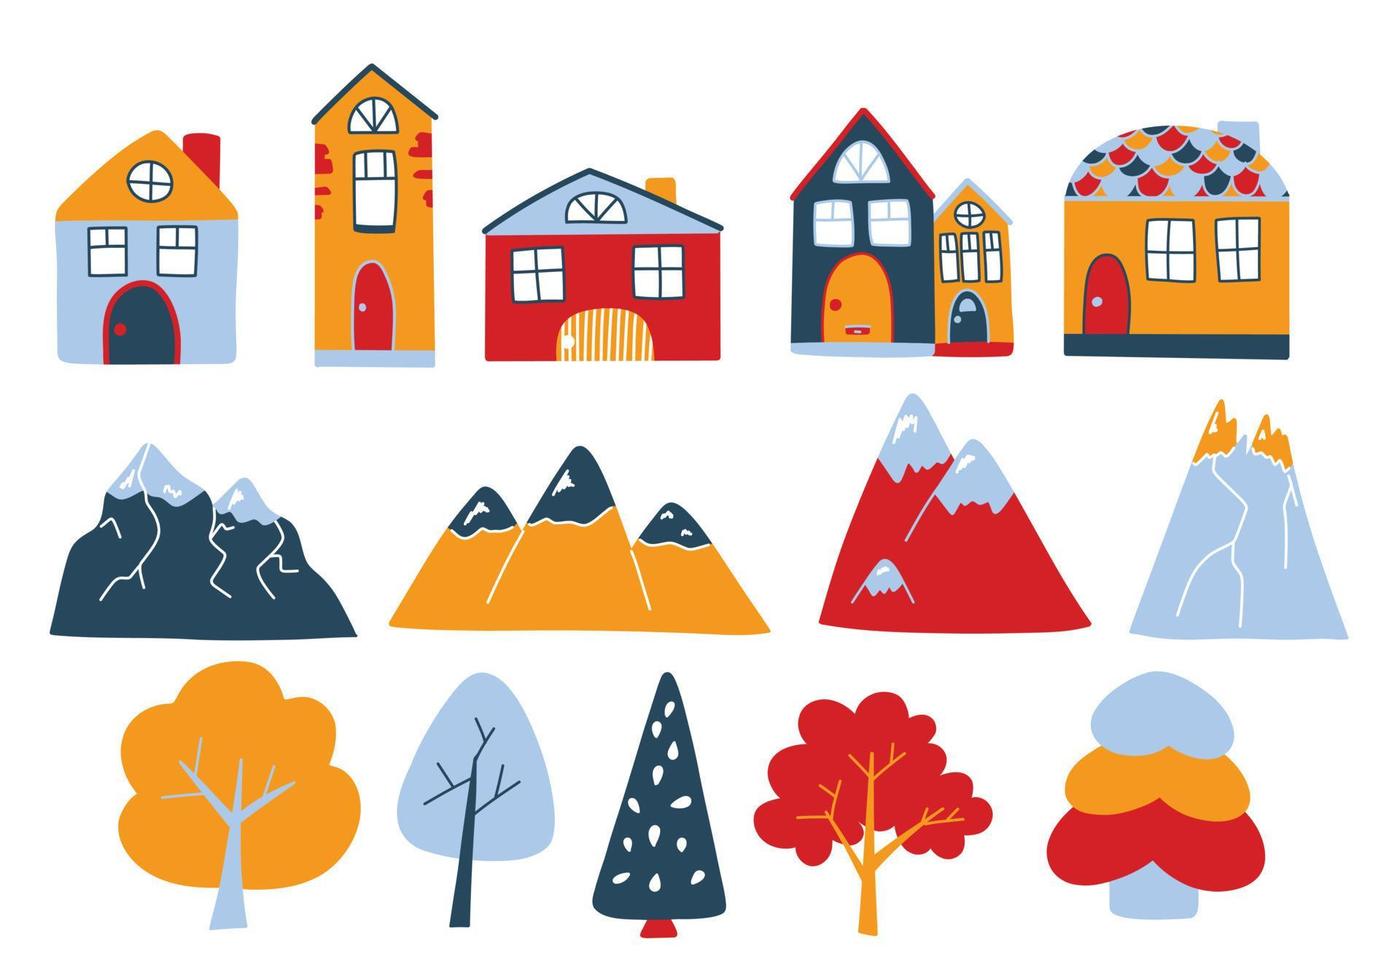 vetor definido com lindas casas coloridas, montanhas e árvores no estilo doodle. casas norueguesas, picos de montanhas. ilustrações fofas para cartões postais, cartazes, tecidos, design